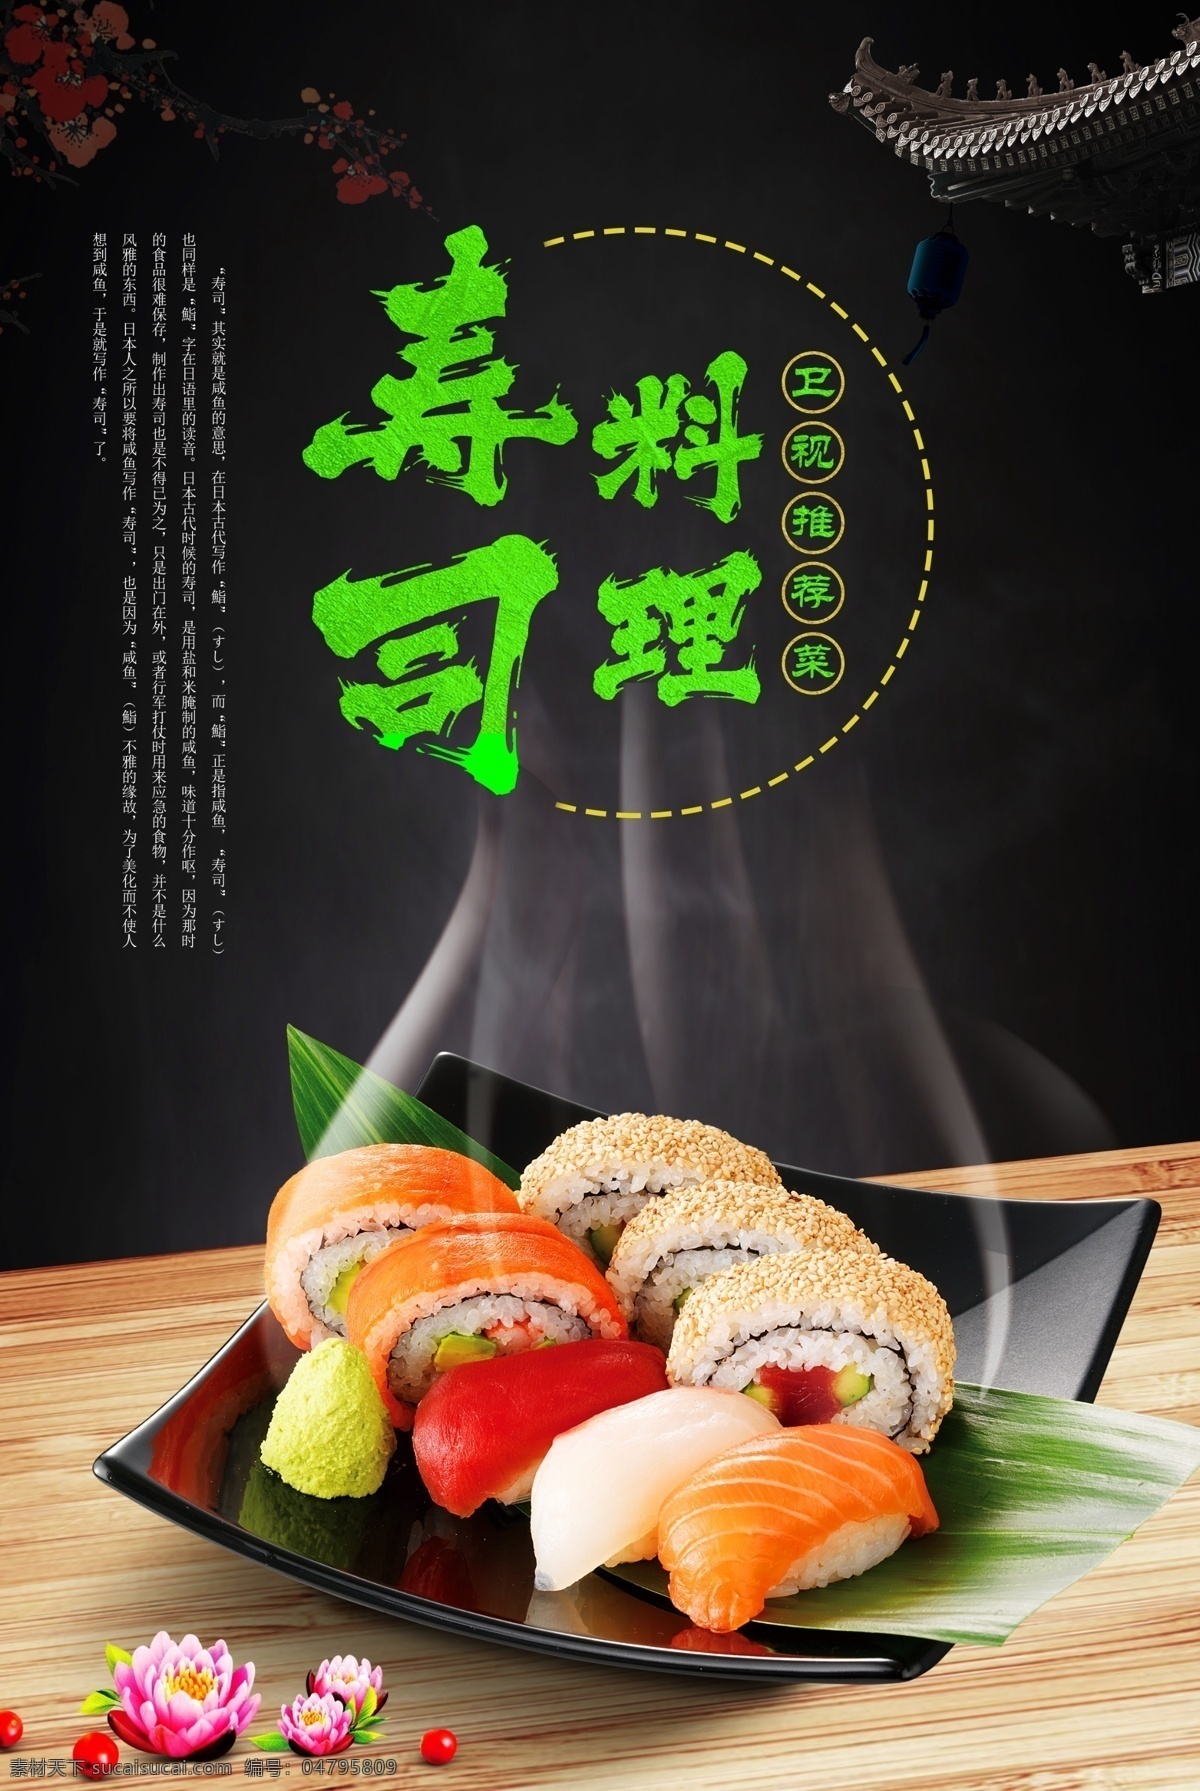 寿司 咸鱼 饭 日本 餐厅 美味 伙食 自助 中国风 古典 设计文件 分层